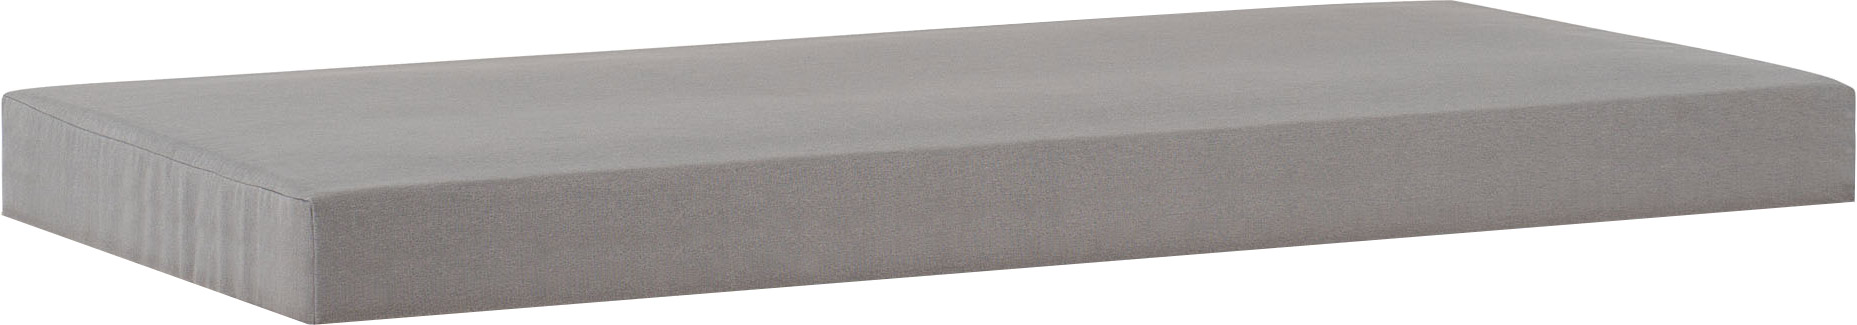 Furling mattress Rast grey